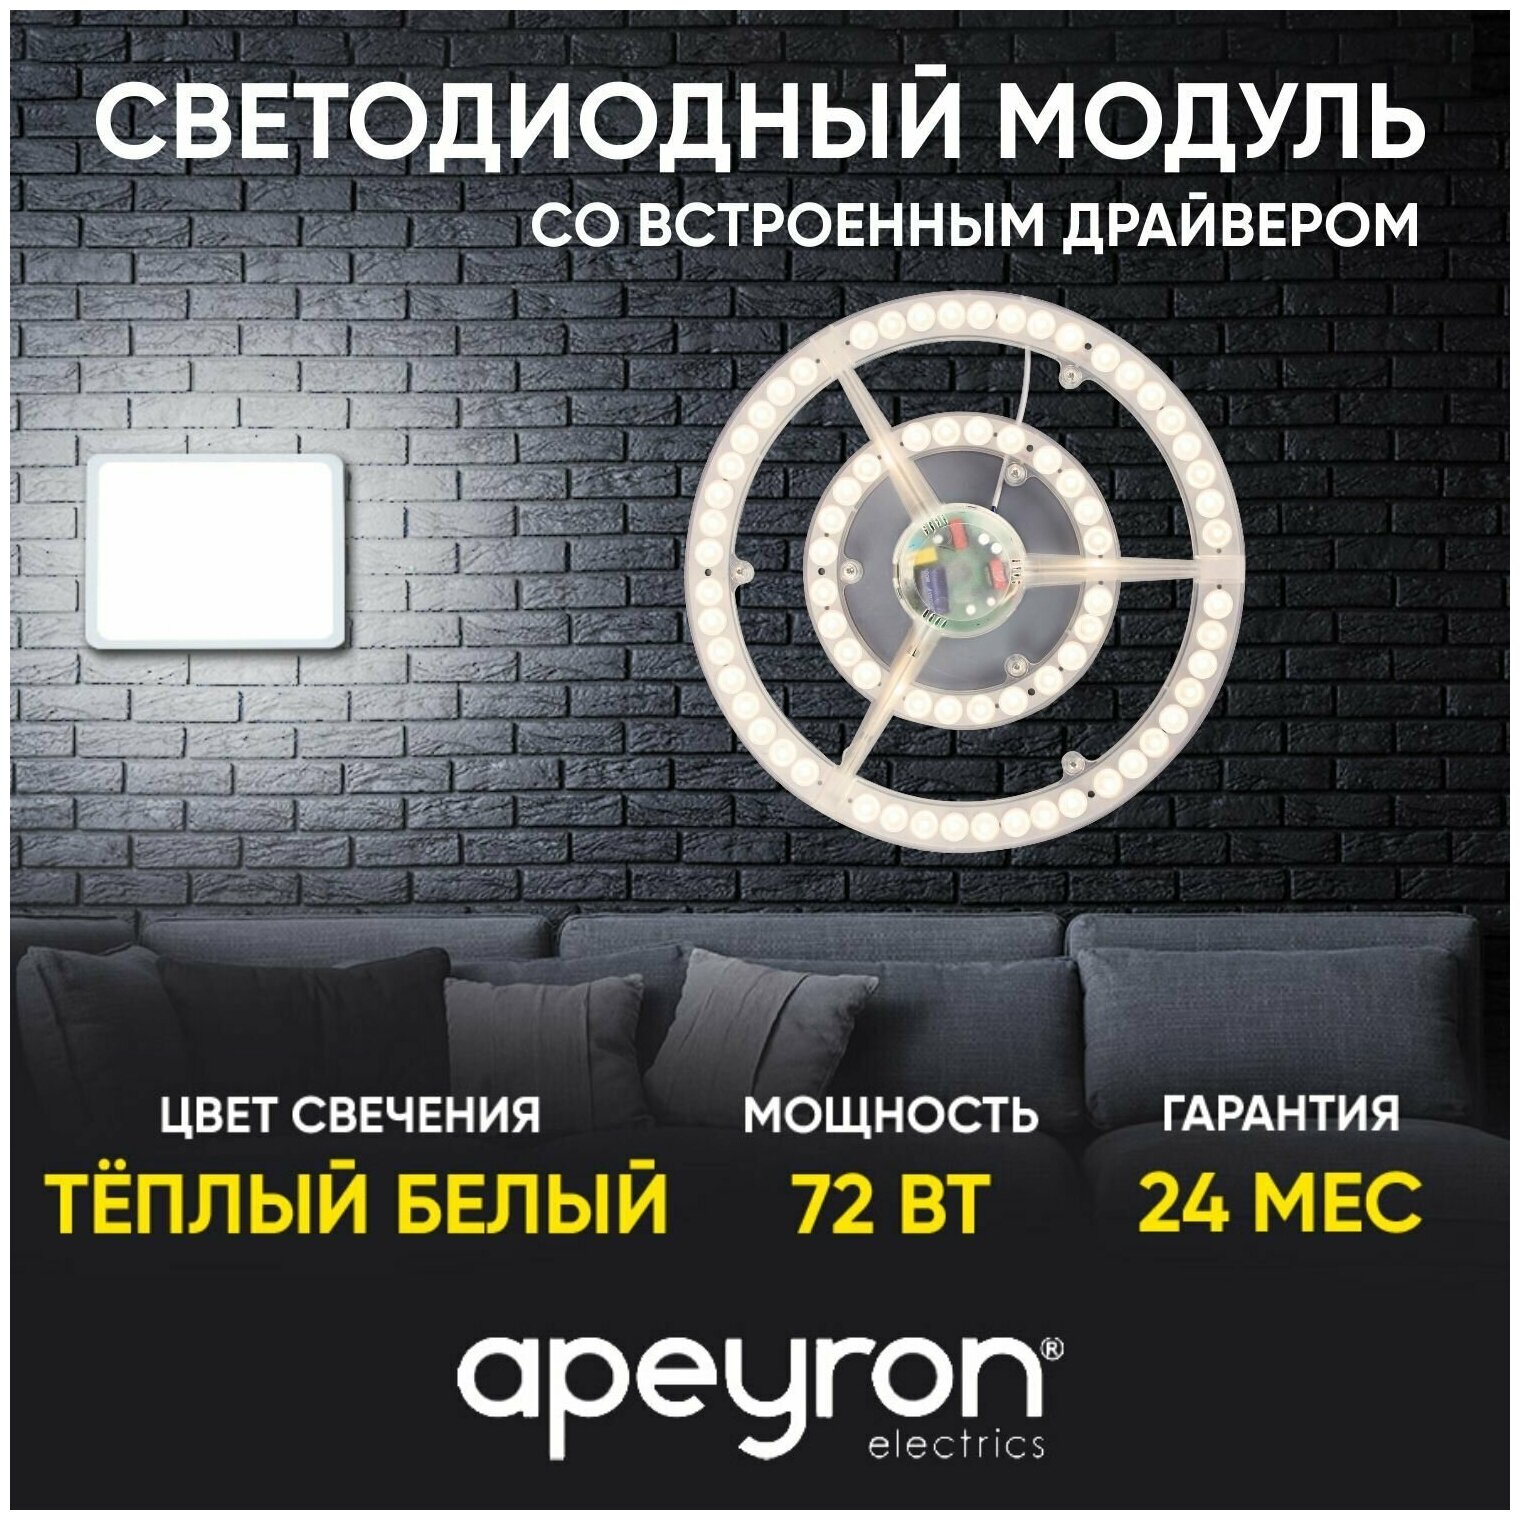 Cветодиодный модуль со встроенным драйвером APEYRON 02-34 72Вт 5400 Лм 2700 K